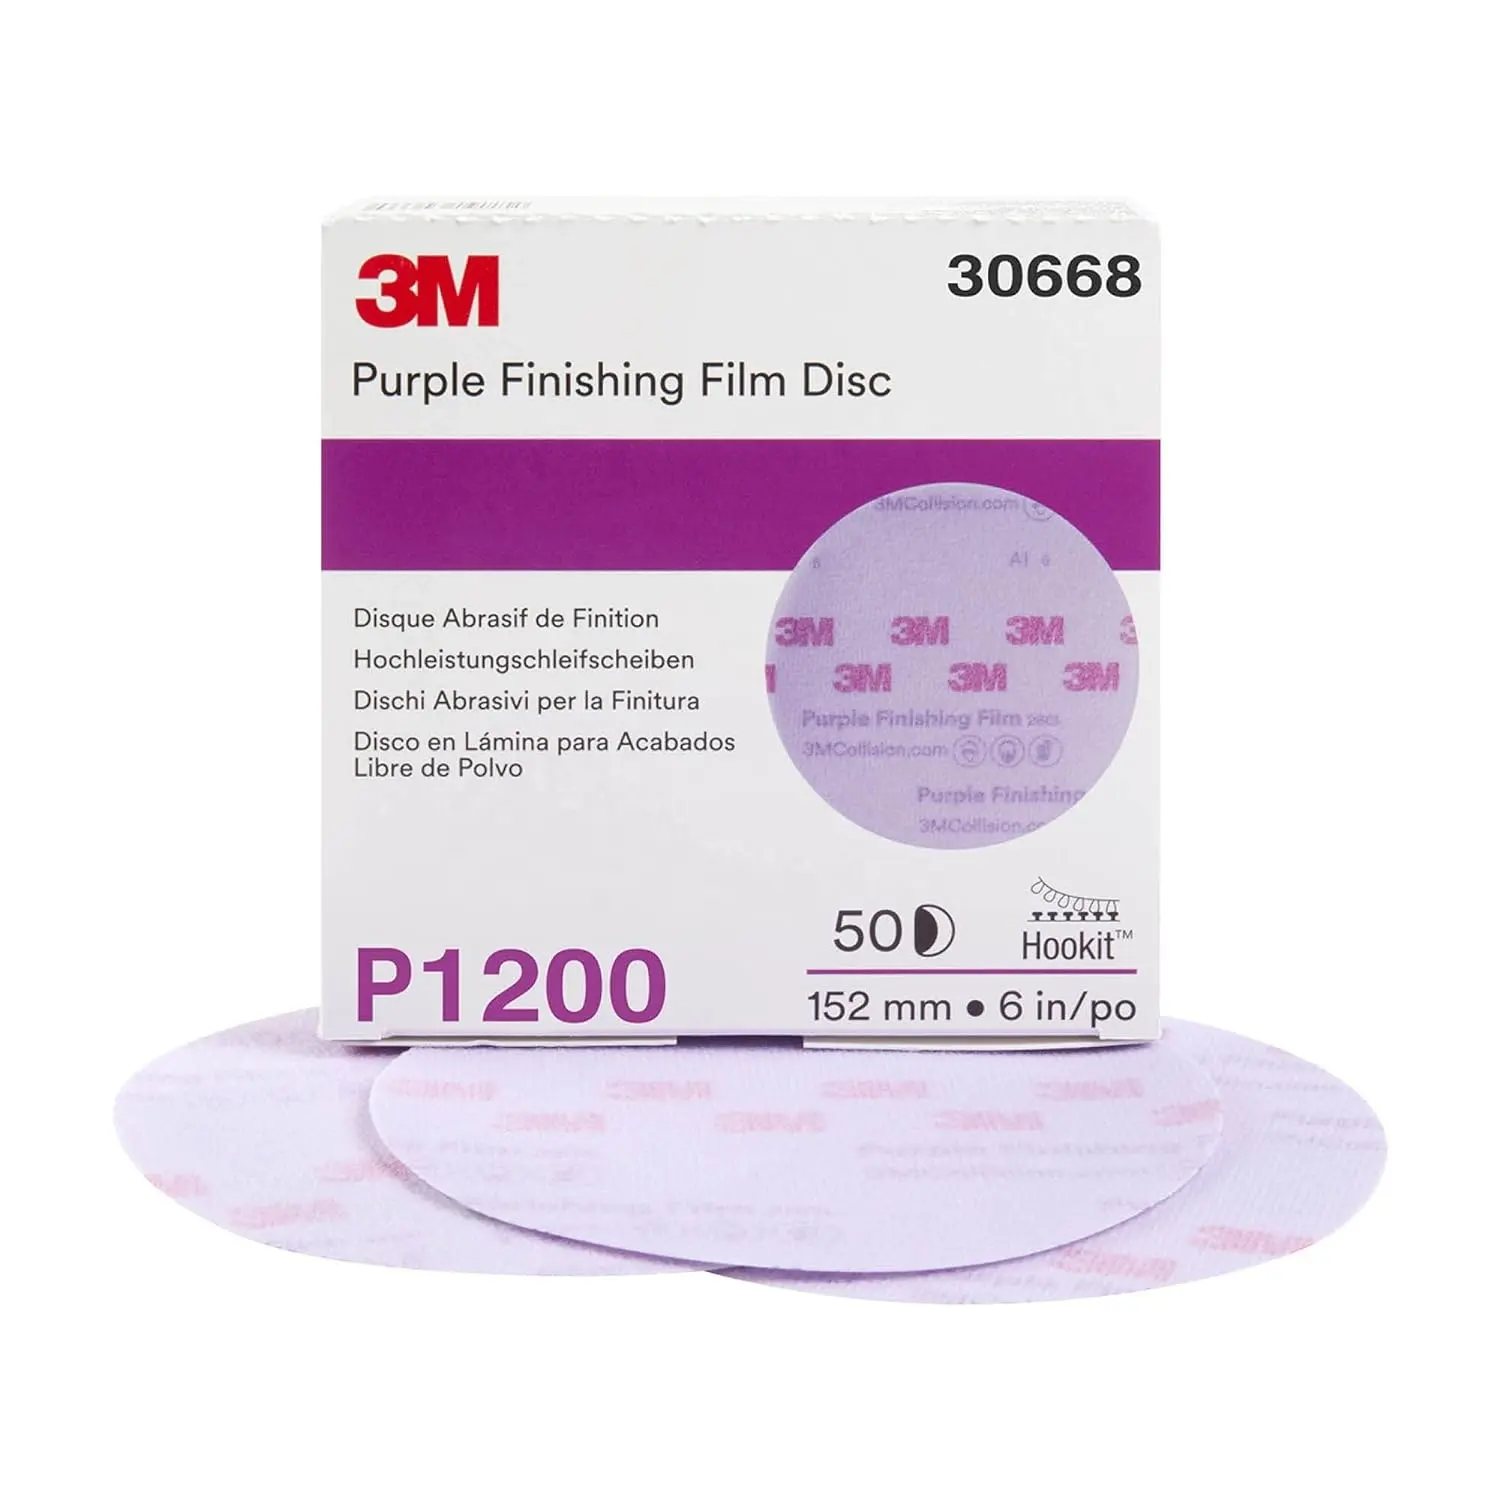 Disco abrasivo de película de acabado púrpura Hookit 3M 260L, Trizact 3000 para eliminación de arañazos refinada